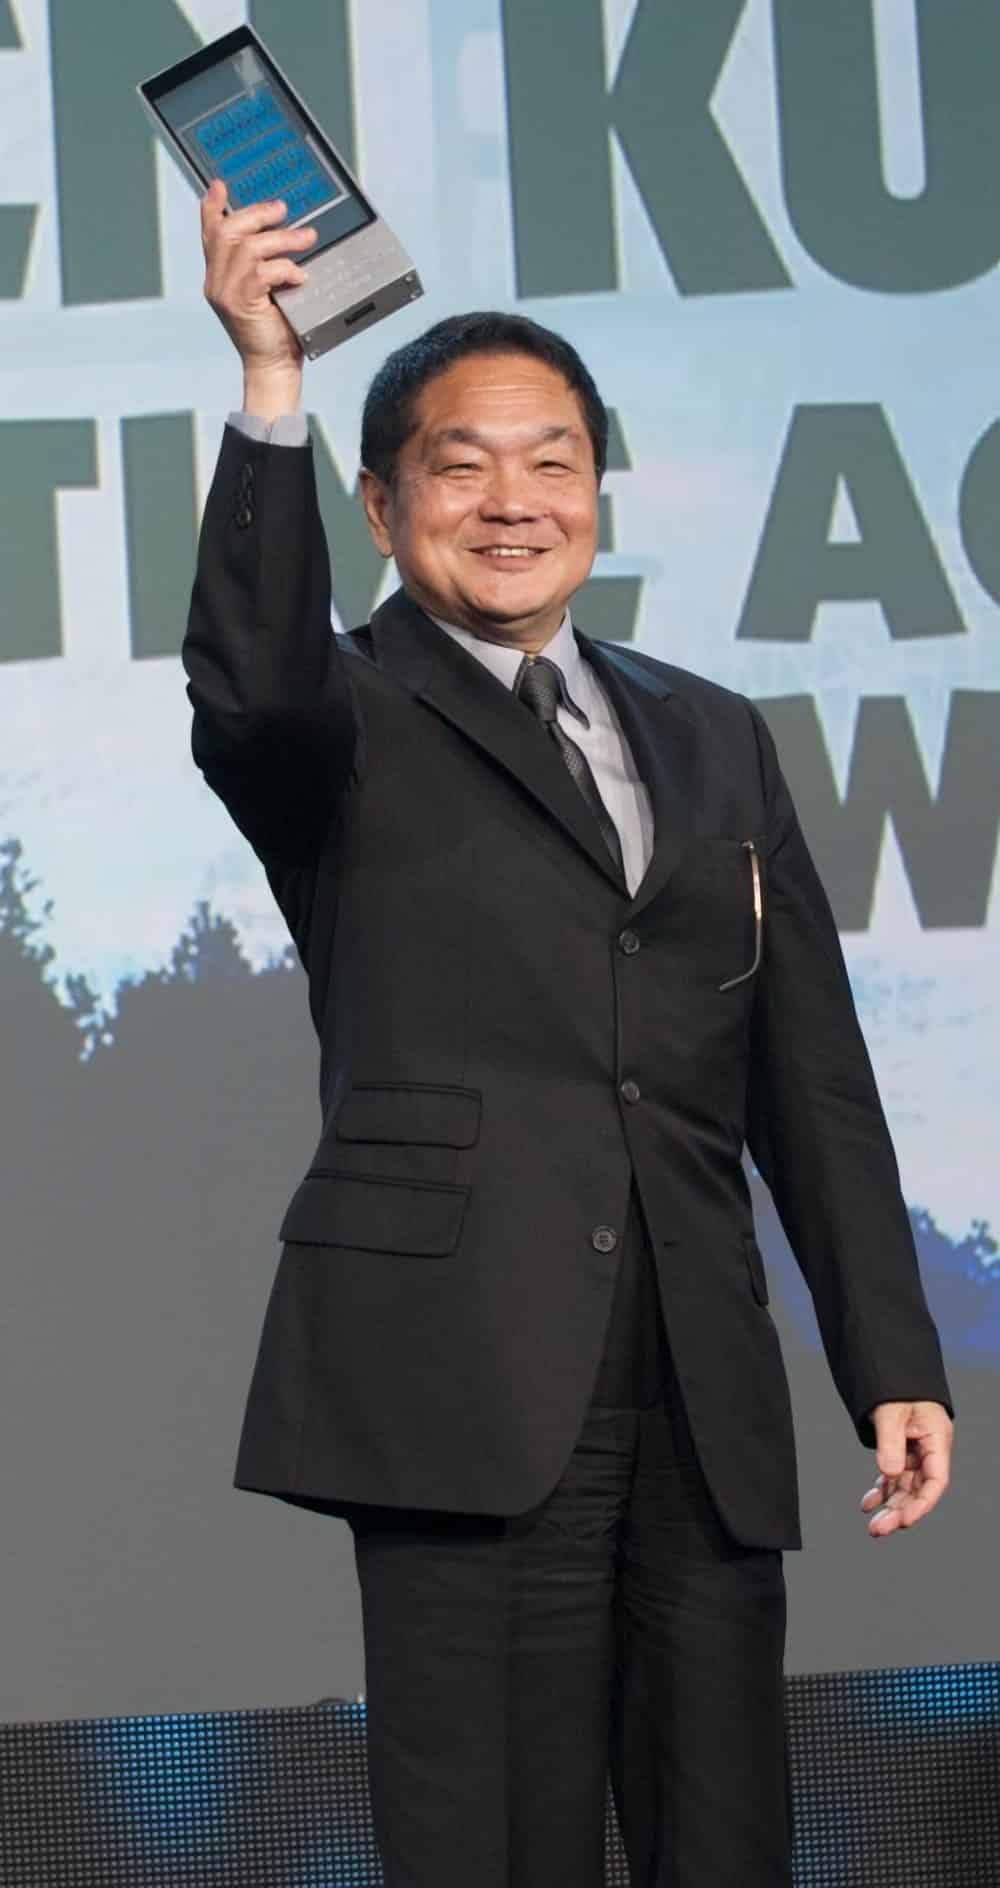 Ken Kutaragi, criador do PlayStation, se aposentou após os problemas no lançamento do PS3